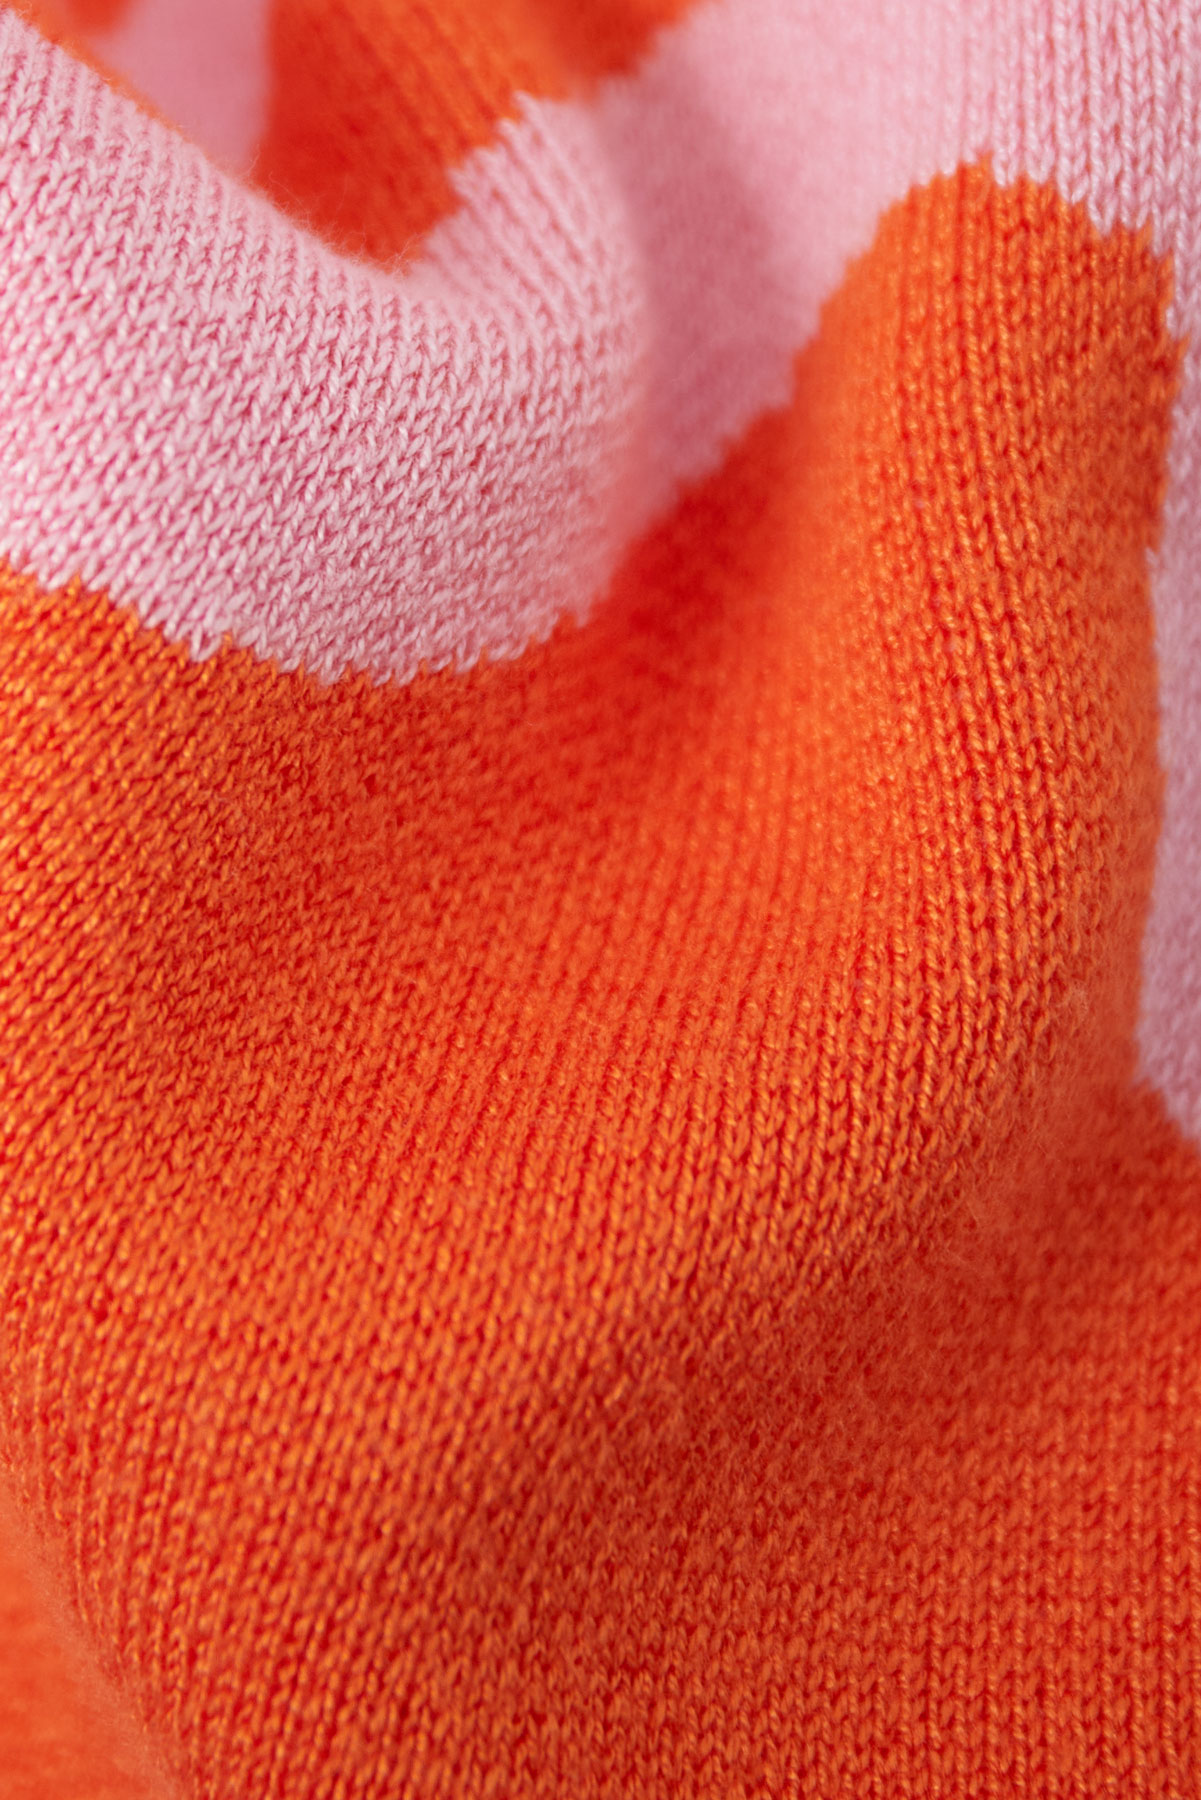 Pantolon organik çizgili baskı - turuncu ve pembe Resim9